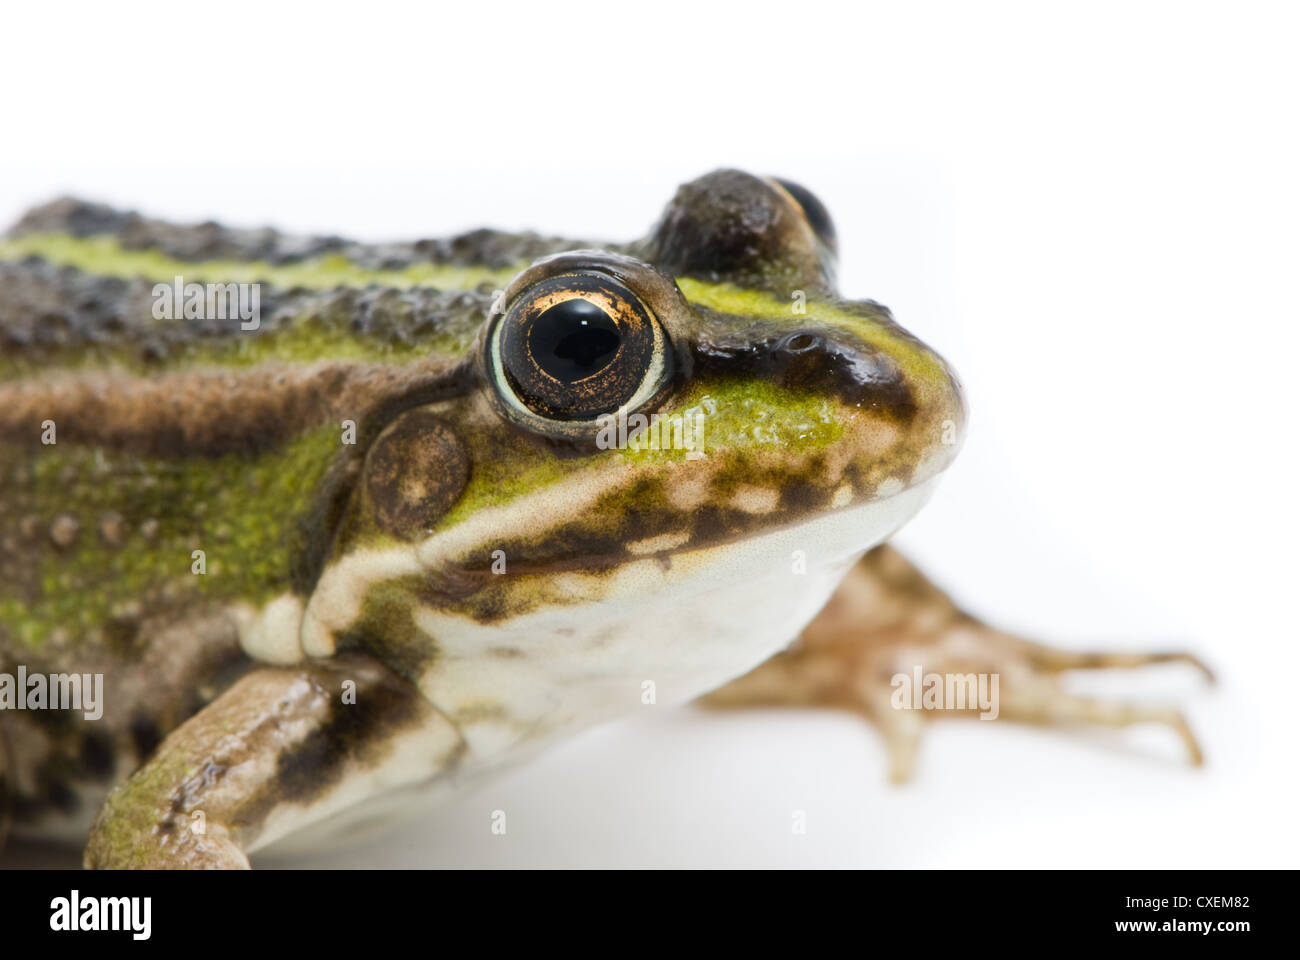 Rana ridibunda. Frog on white background Stock Photo